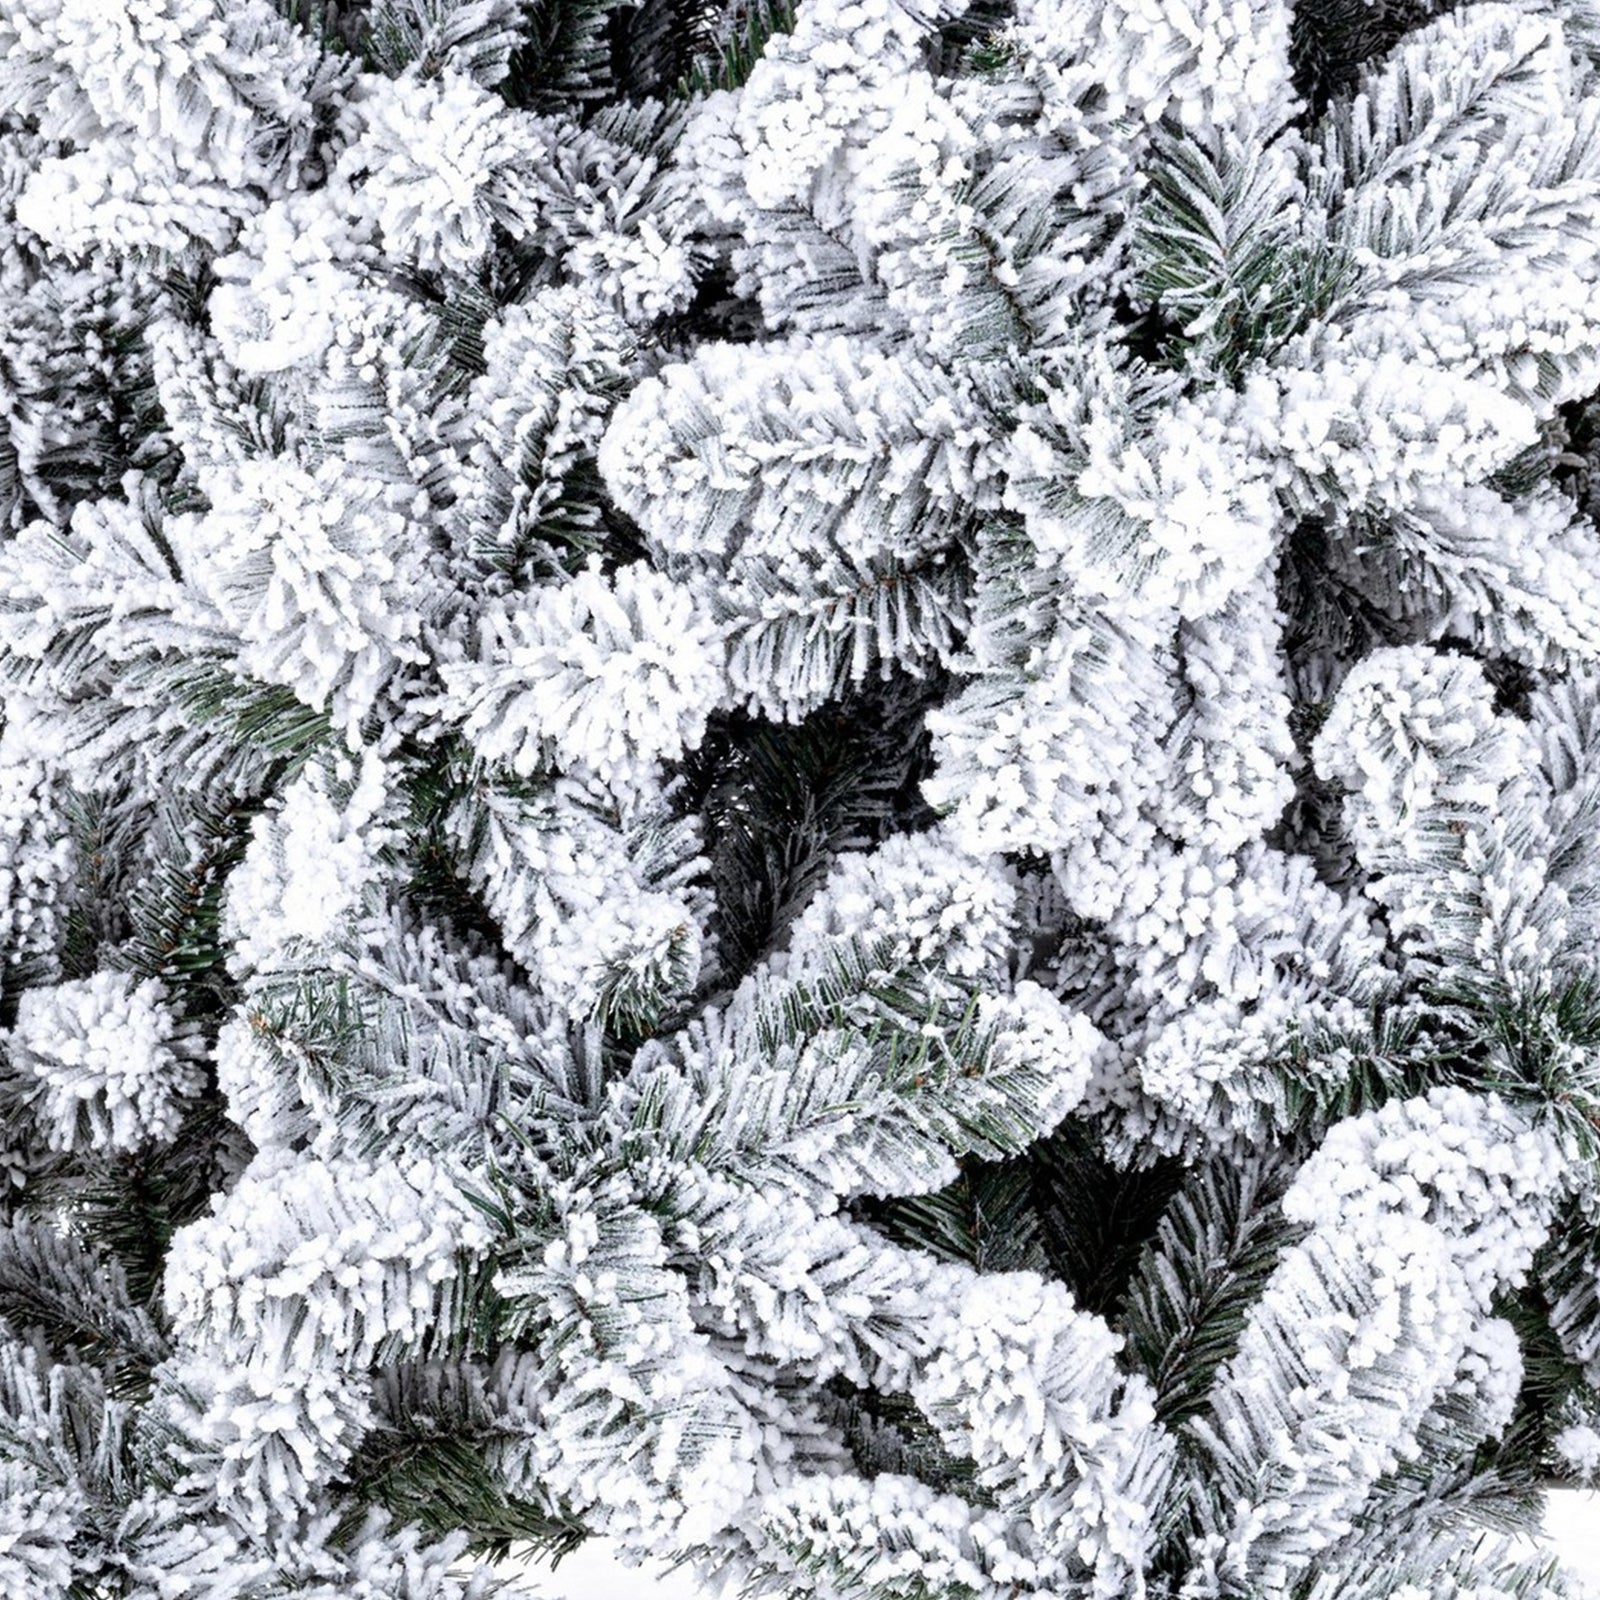 Árbol de Navidad nevado "Roskilde" fabricado en PVC + flocado de muy alta calidad